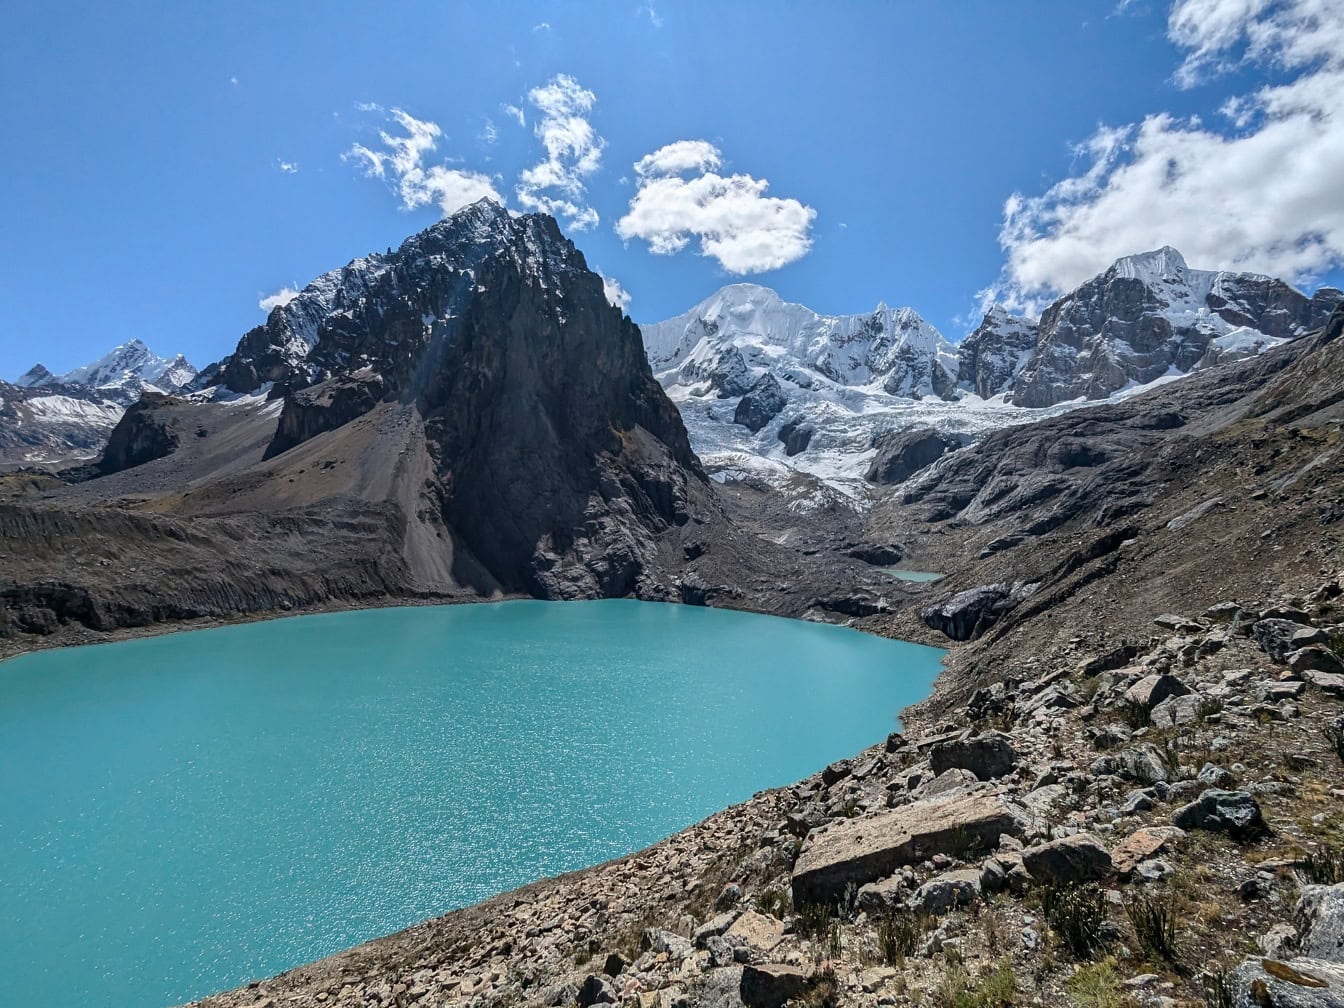 Ett hisnande panorama över en vacker turkos sjö i naturparken i ett Peru högt uppe i Anderna